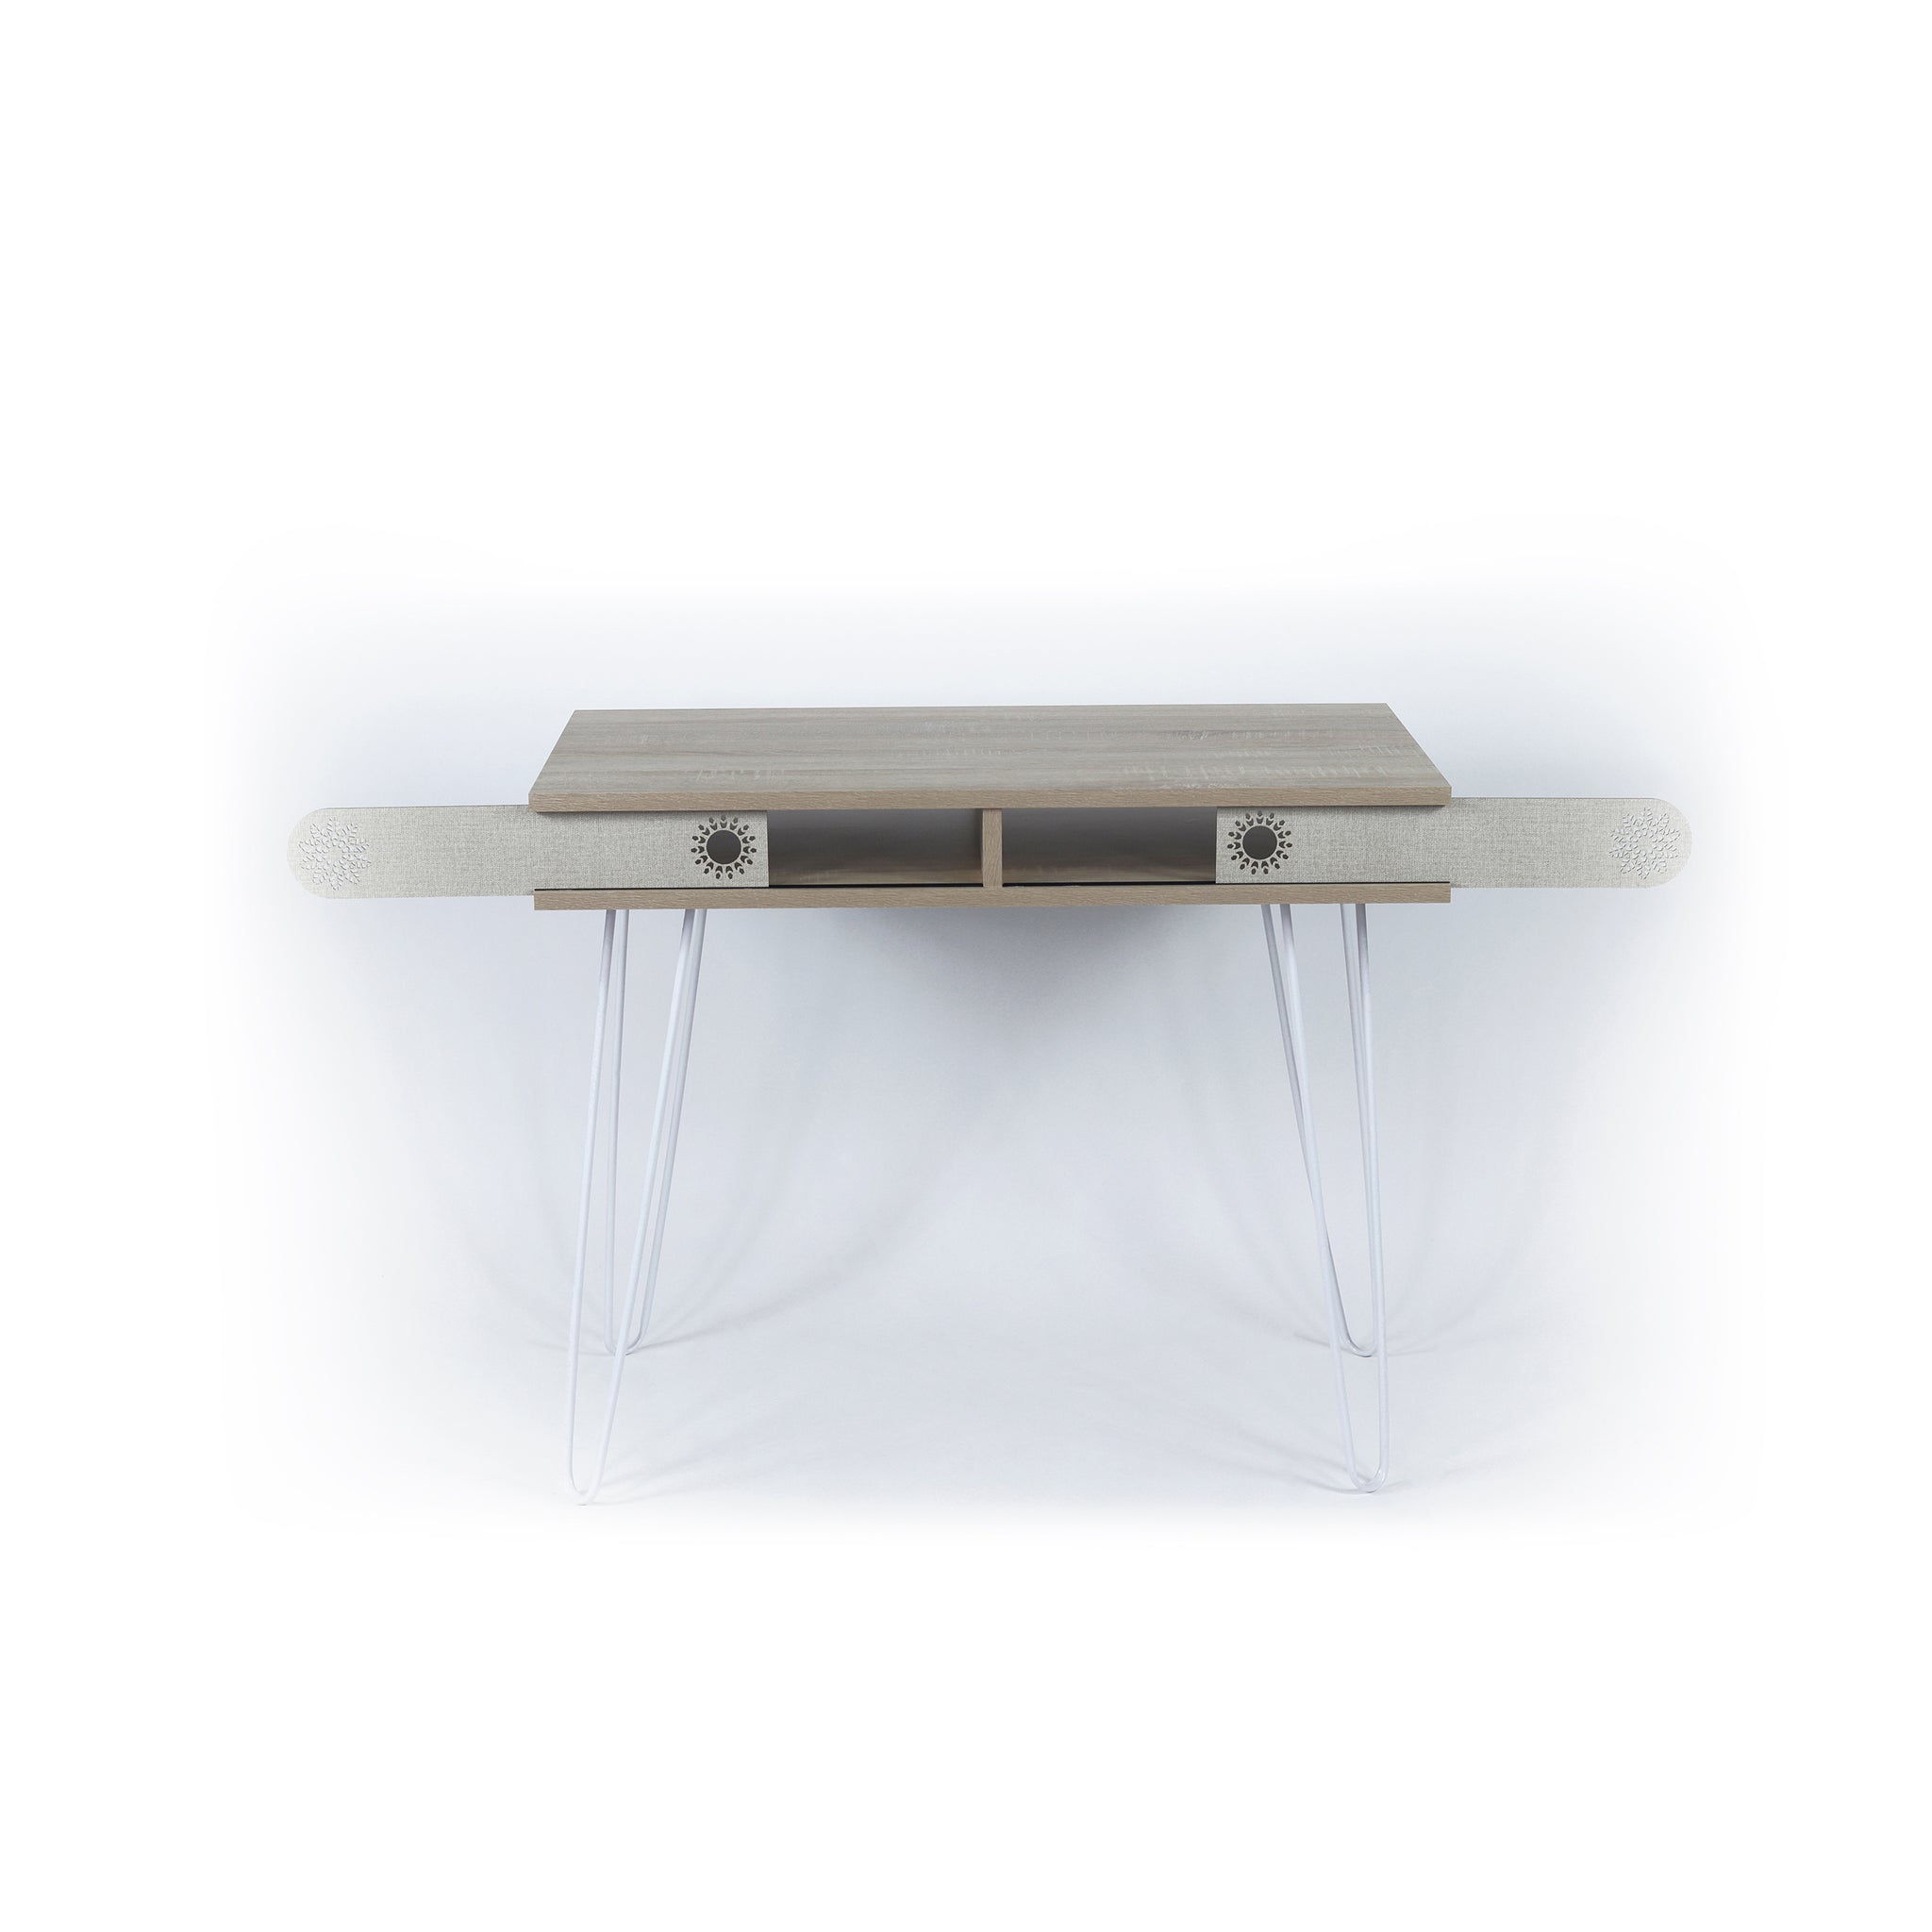 Lora Metal Legs 2 Tier Modern Desk plain light oak-wood